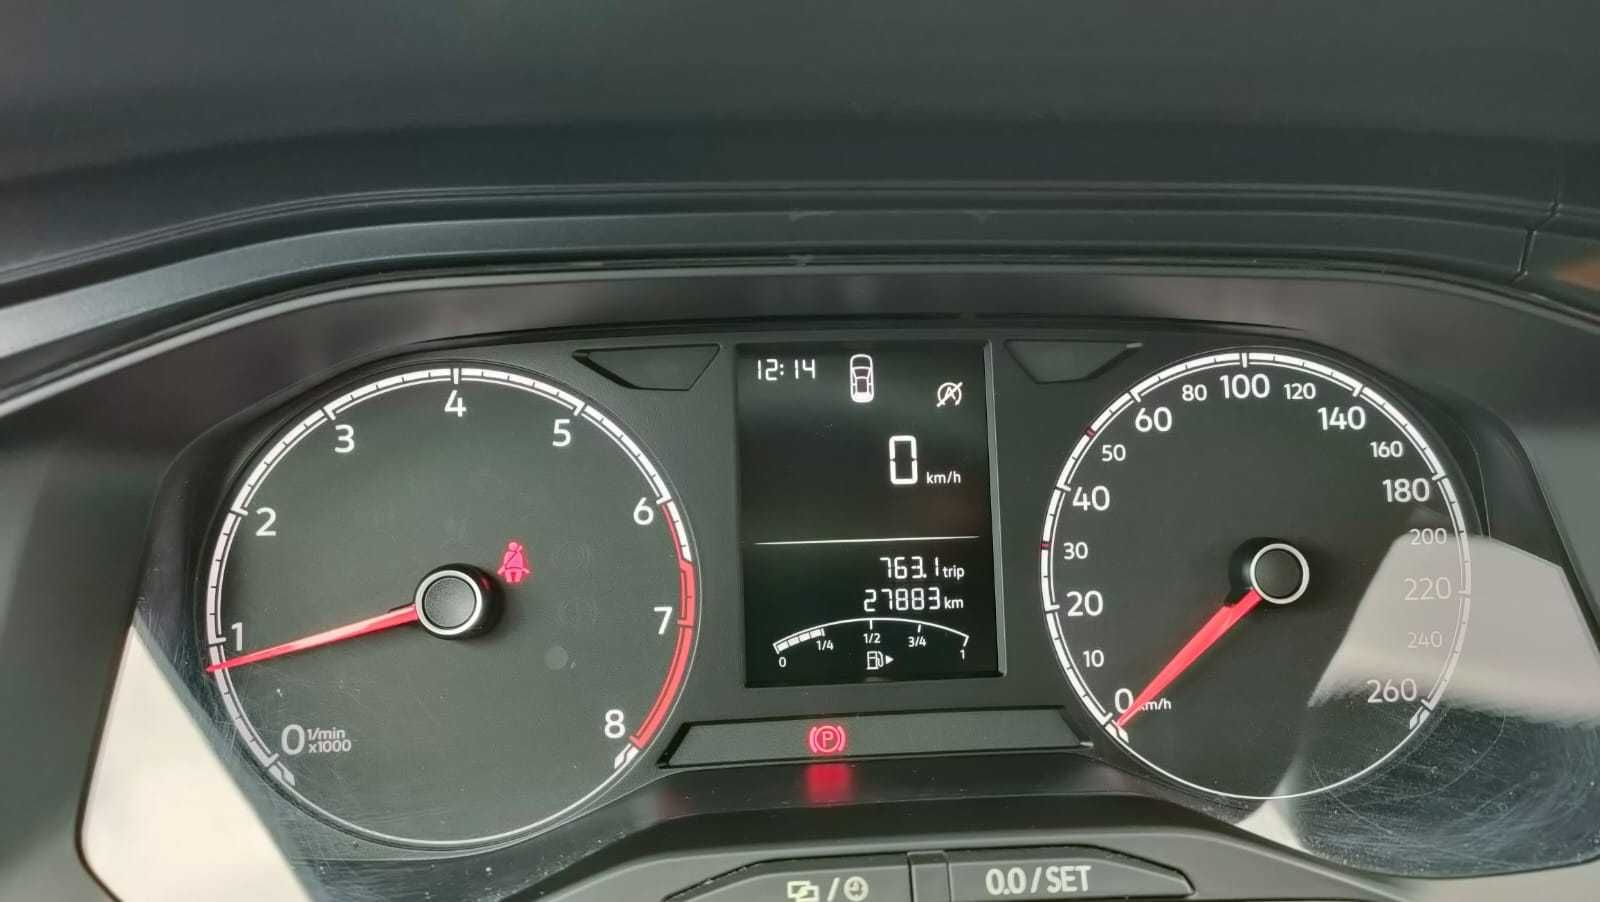 Proprietar Volkswagen Polo 2020 / 27883 km garantie August